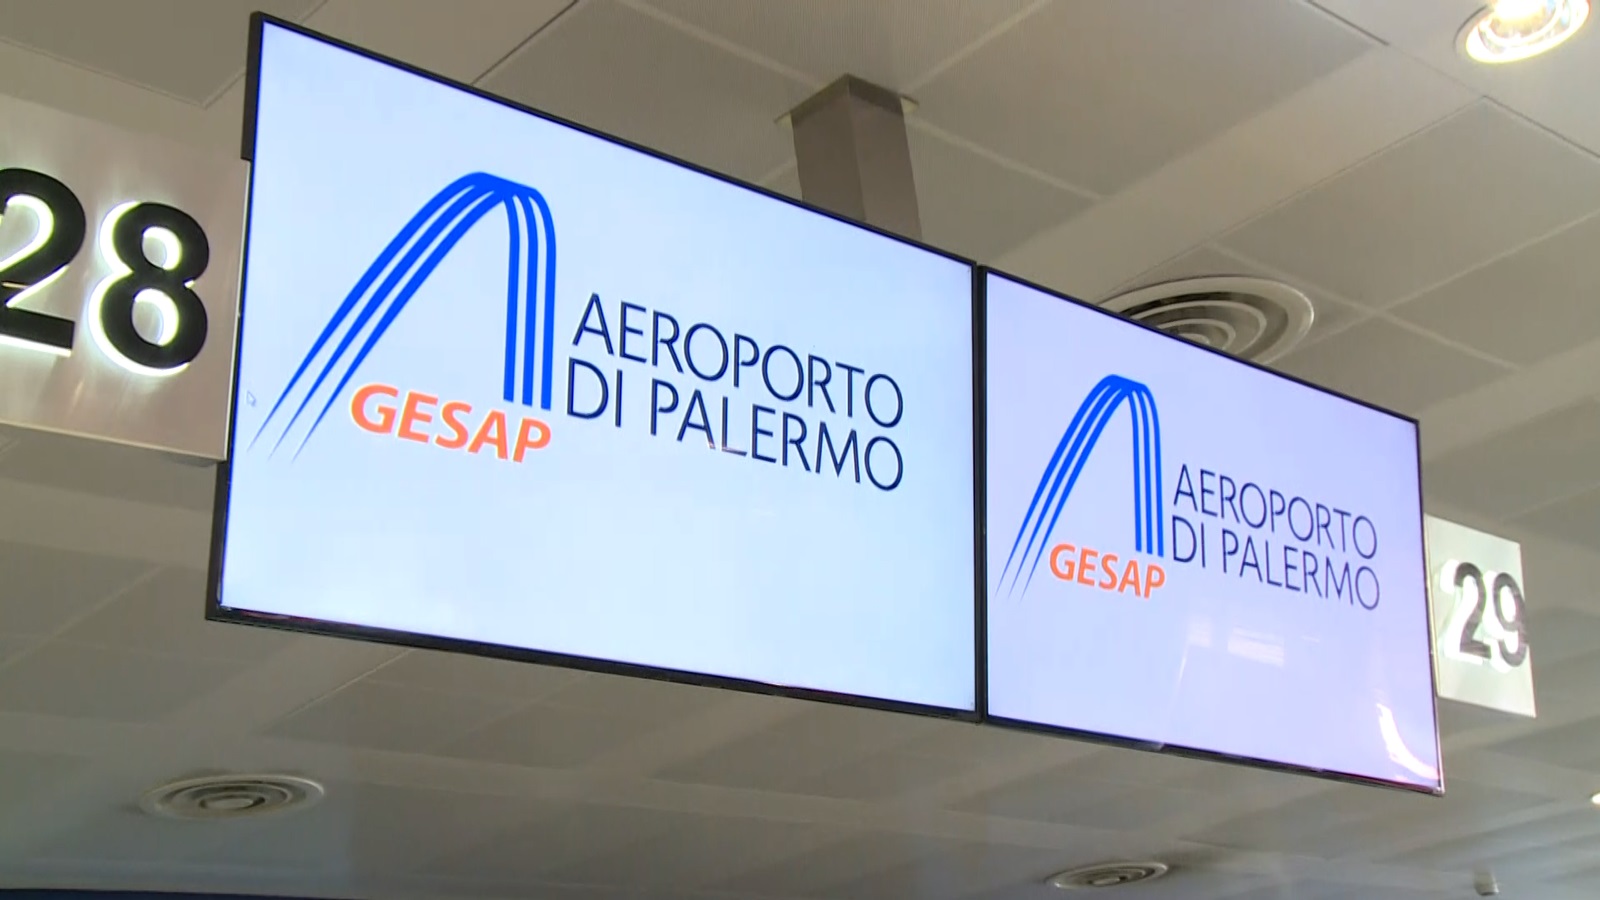 Aeroporti, Gesap approva il bilancio: utile di 7,6 milioni di euro